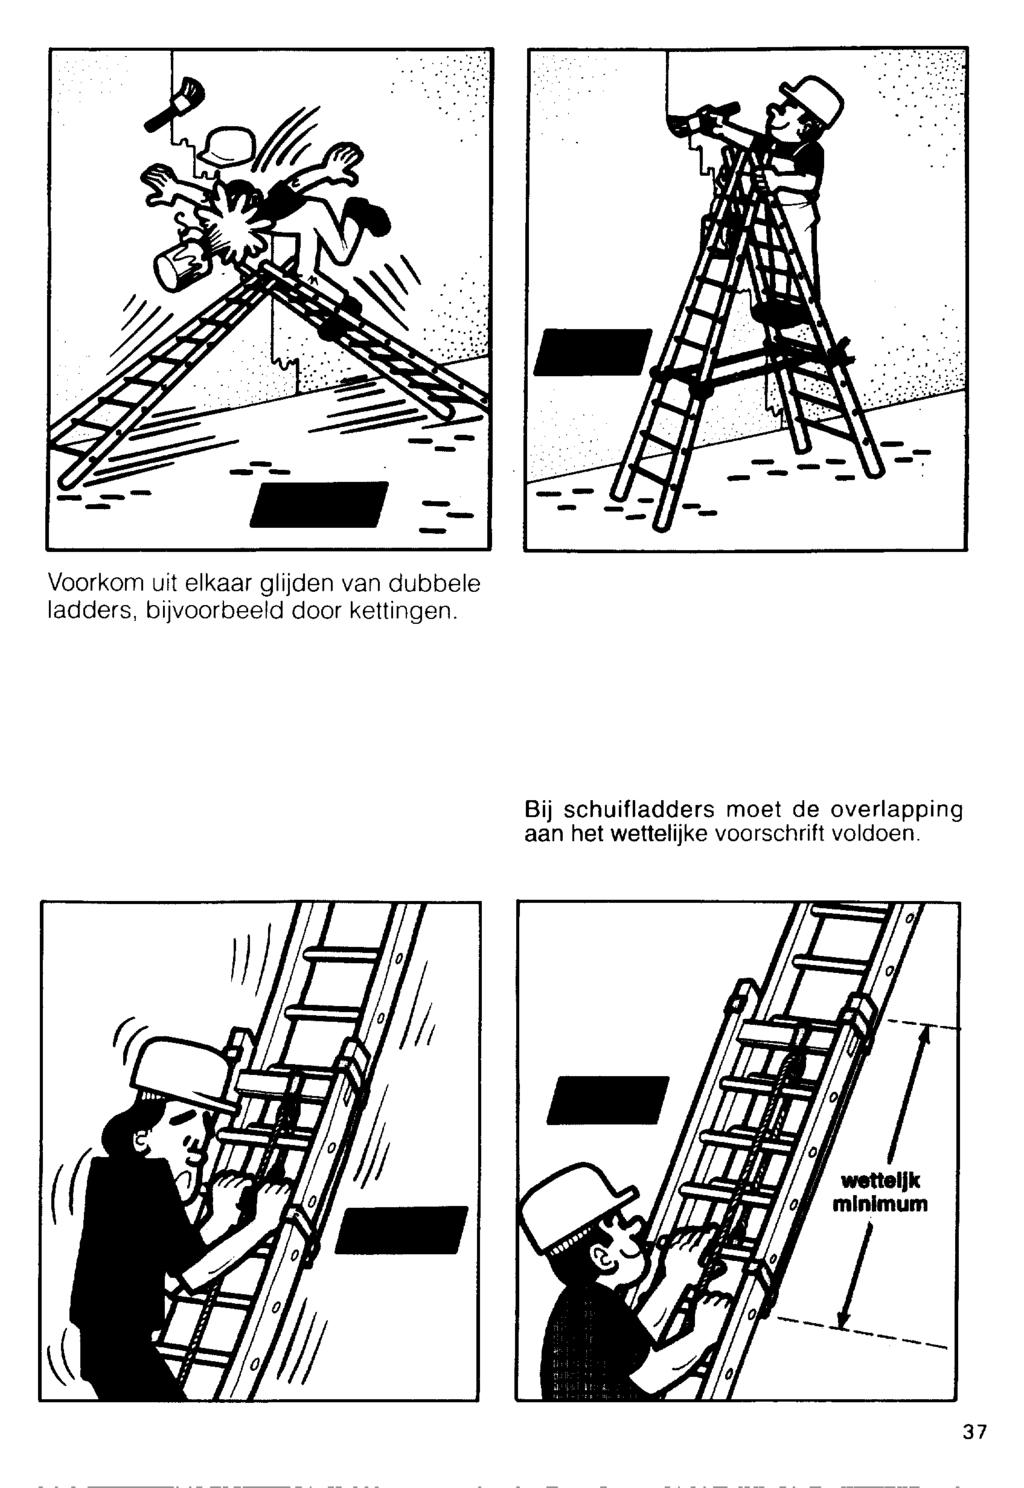 Voorkom uit elkaar glijden van dubbele ladders, bijvoorbeeld door kettingen.